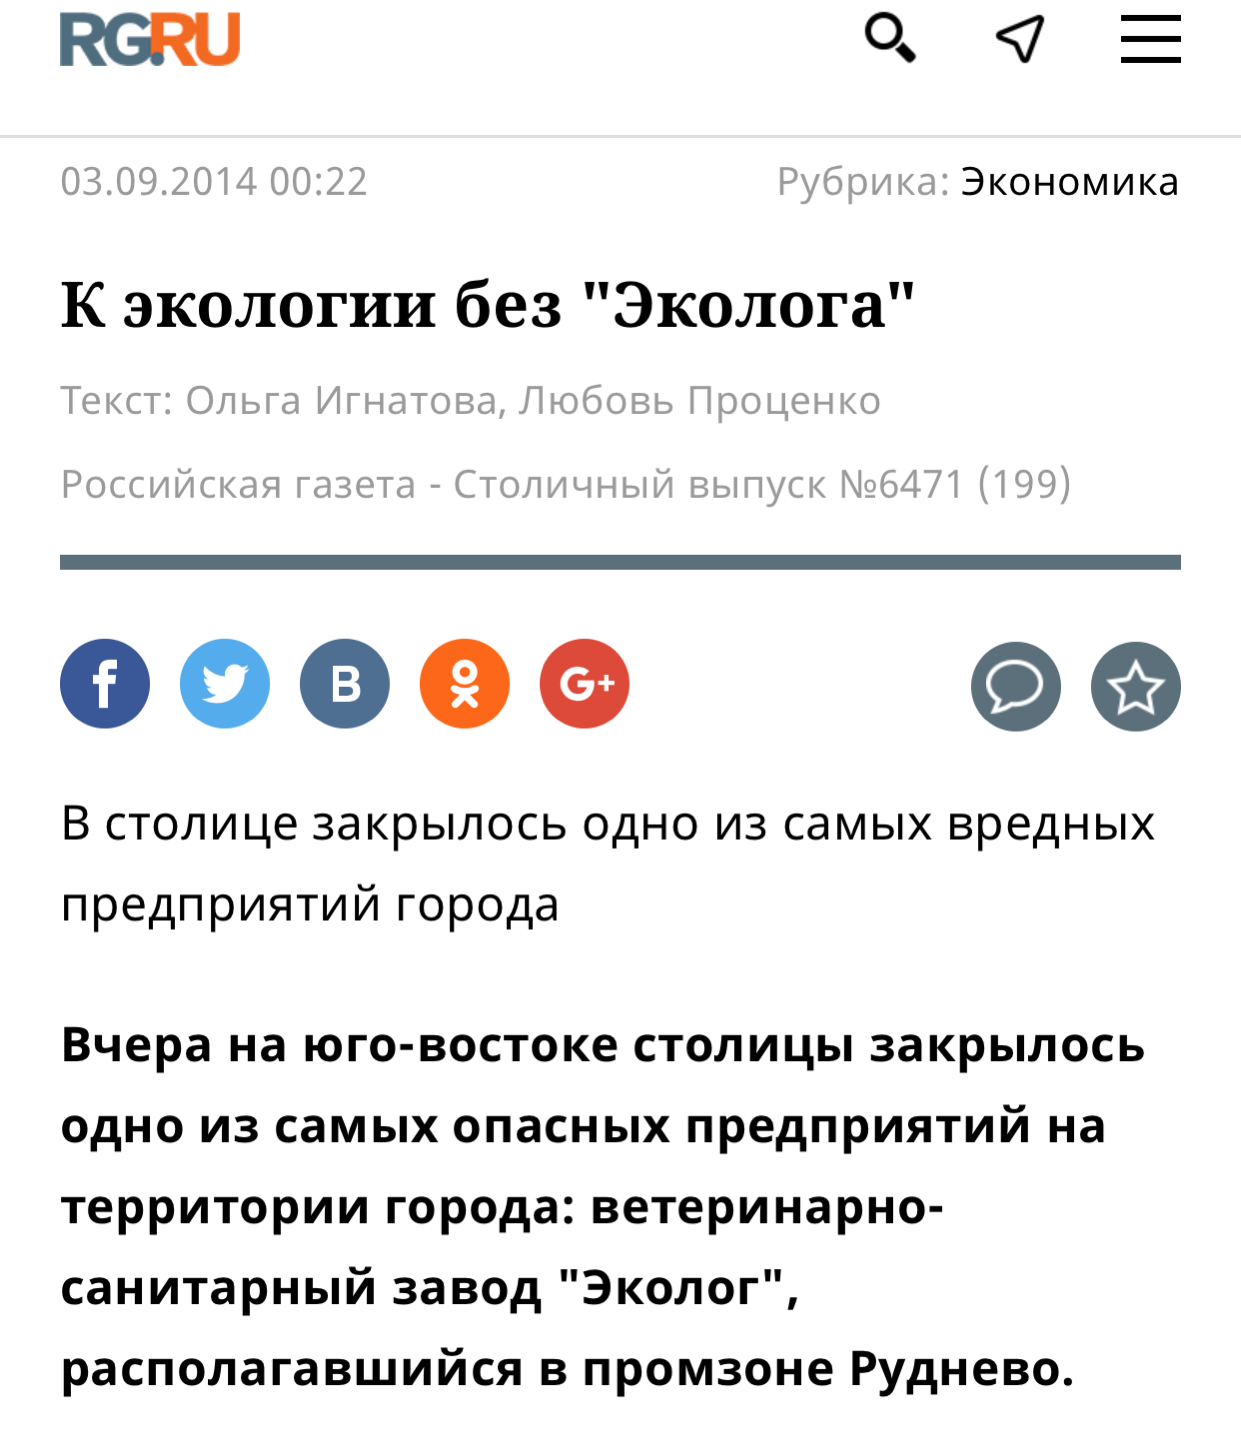 Российская газета, выпуск №6471 (199)